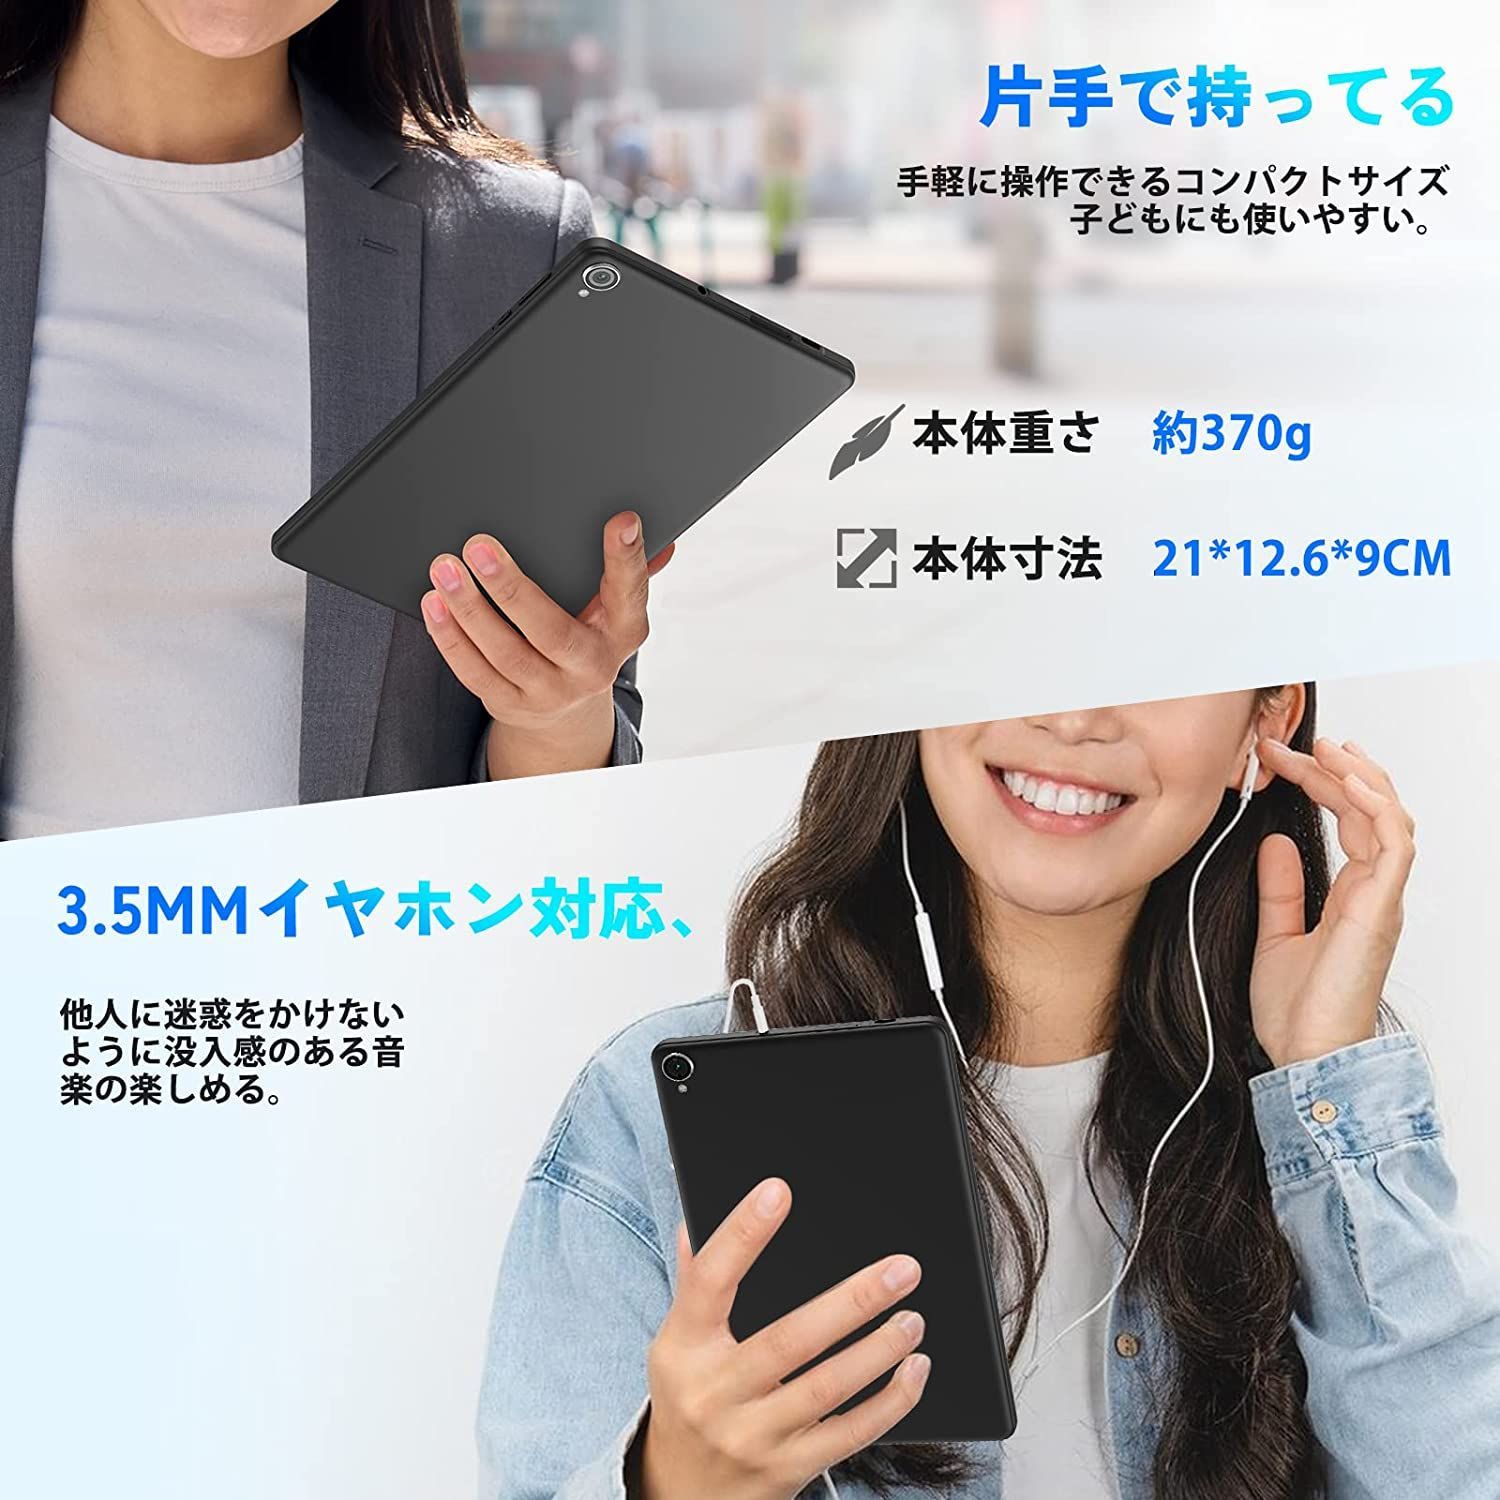 ✨最新版8インチタブレット✨ UAUU（ユアユー）T30♡ 8コアCPU Android12 付属品完備 動作確認済み✨✨✨ -  さくら雑貨本店（土日休店） - メルカリ